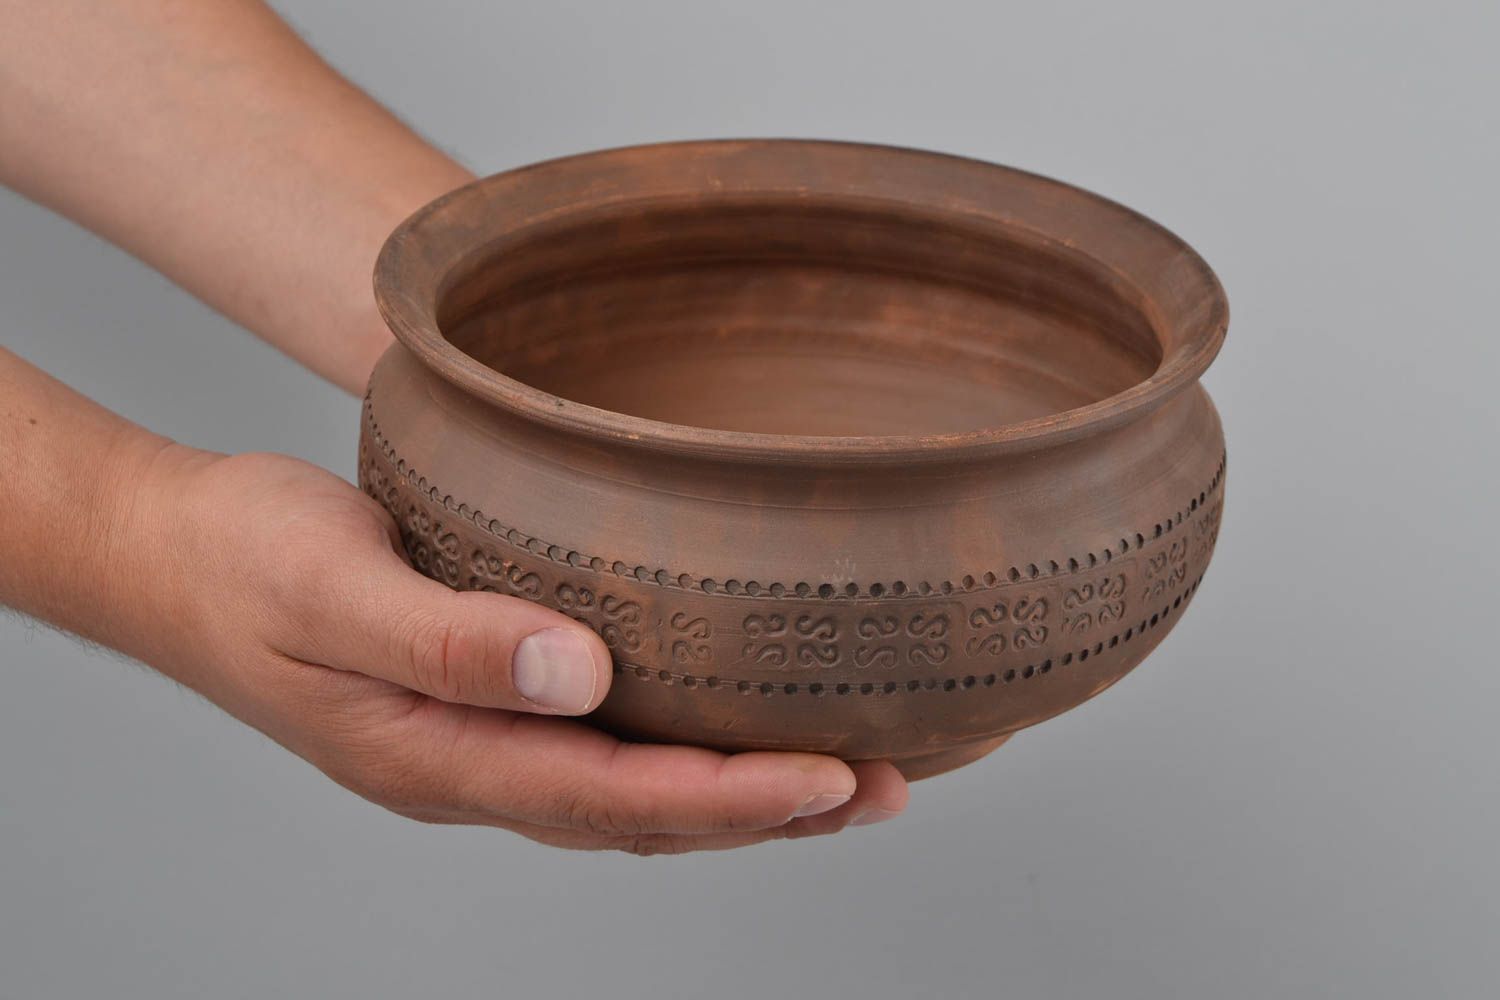 45 oz ceramic bowl without lid 1,5 lb photo 2